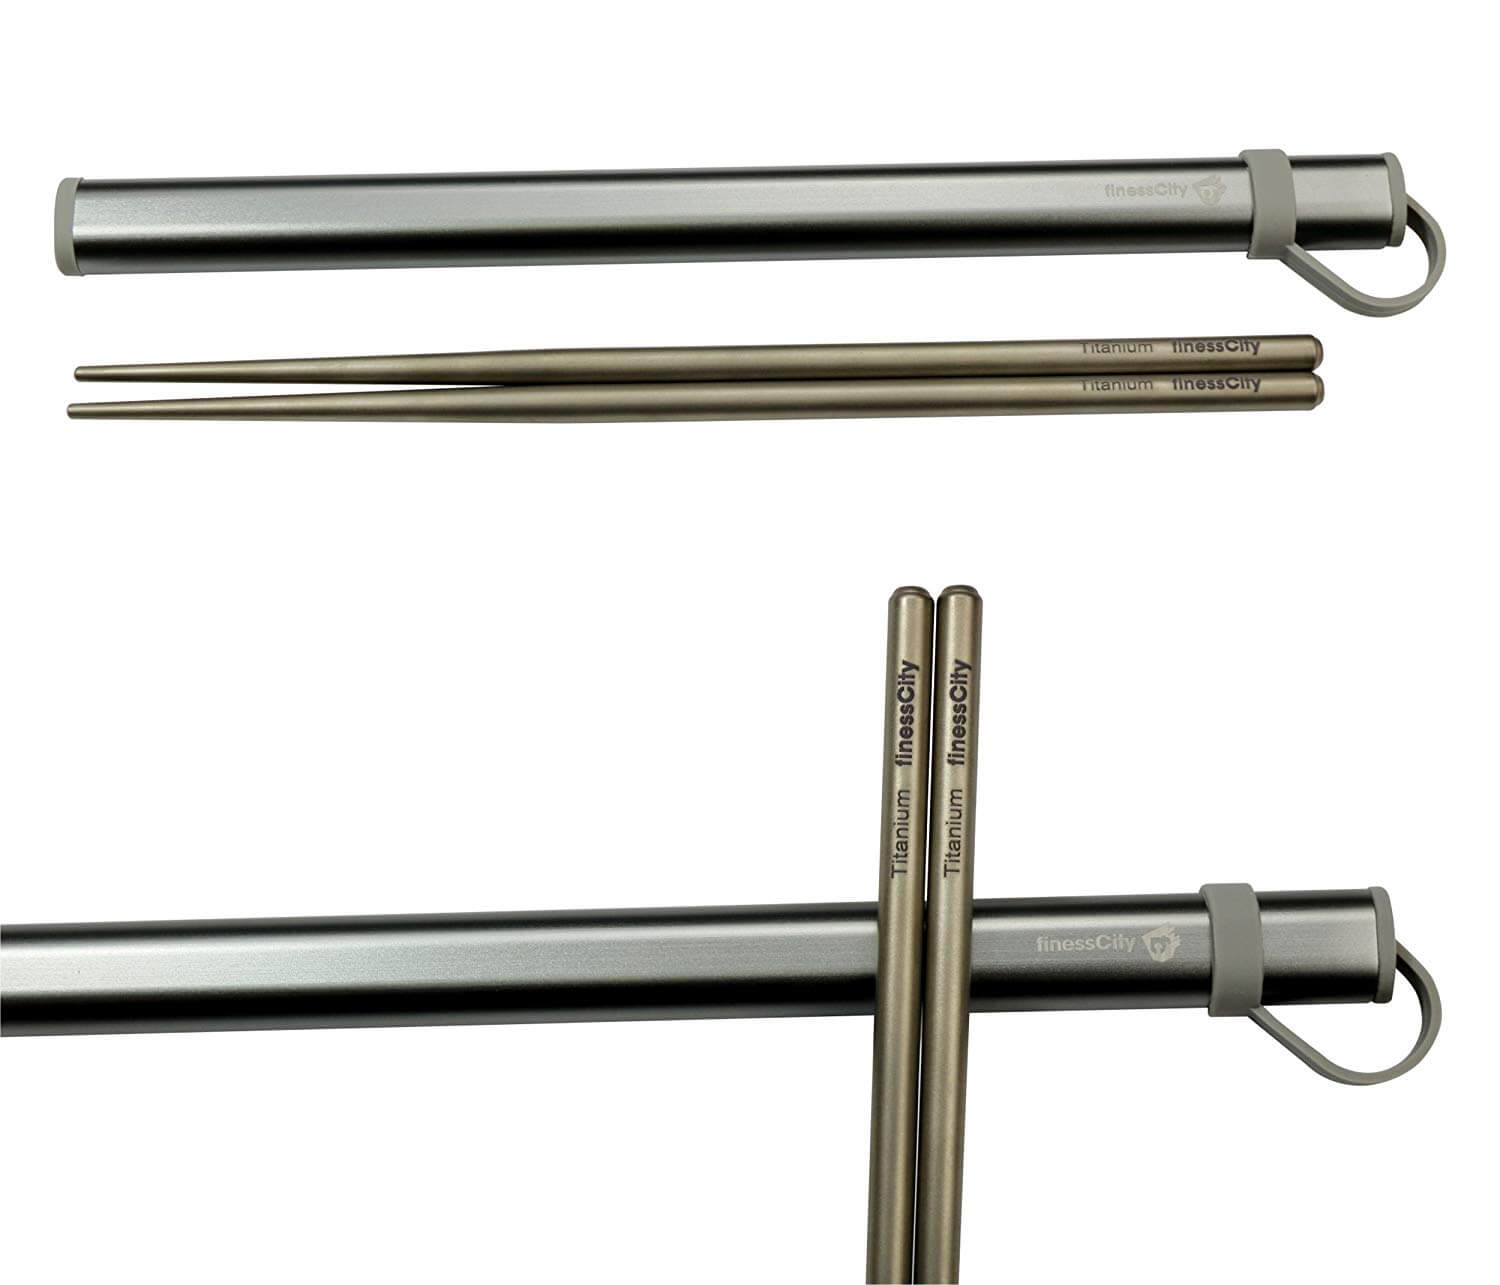 finessCity Titanium Chopsticks with Aluminium Case